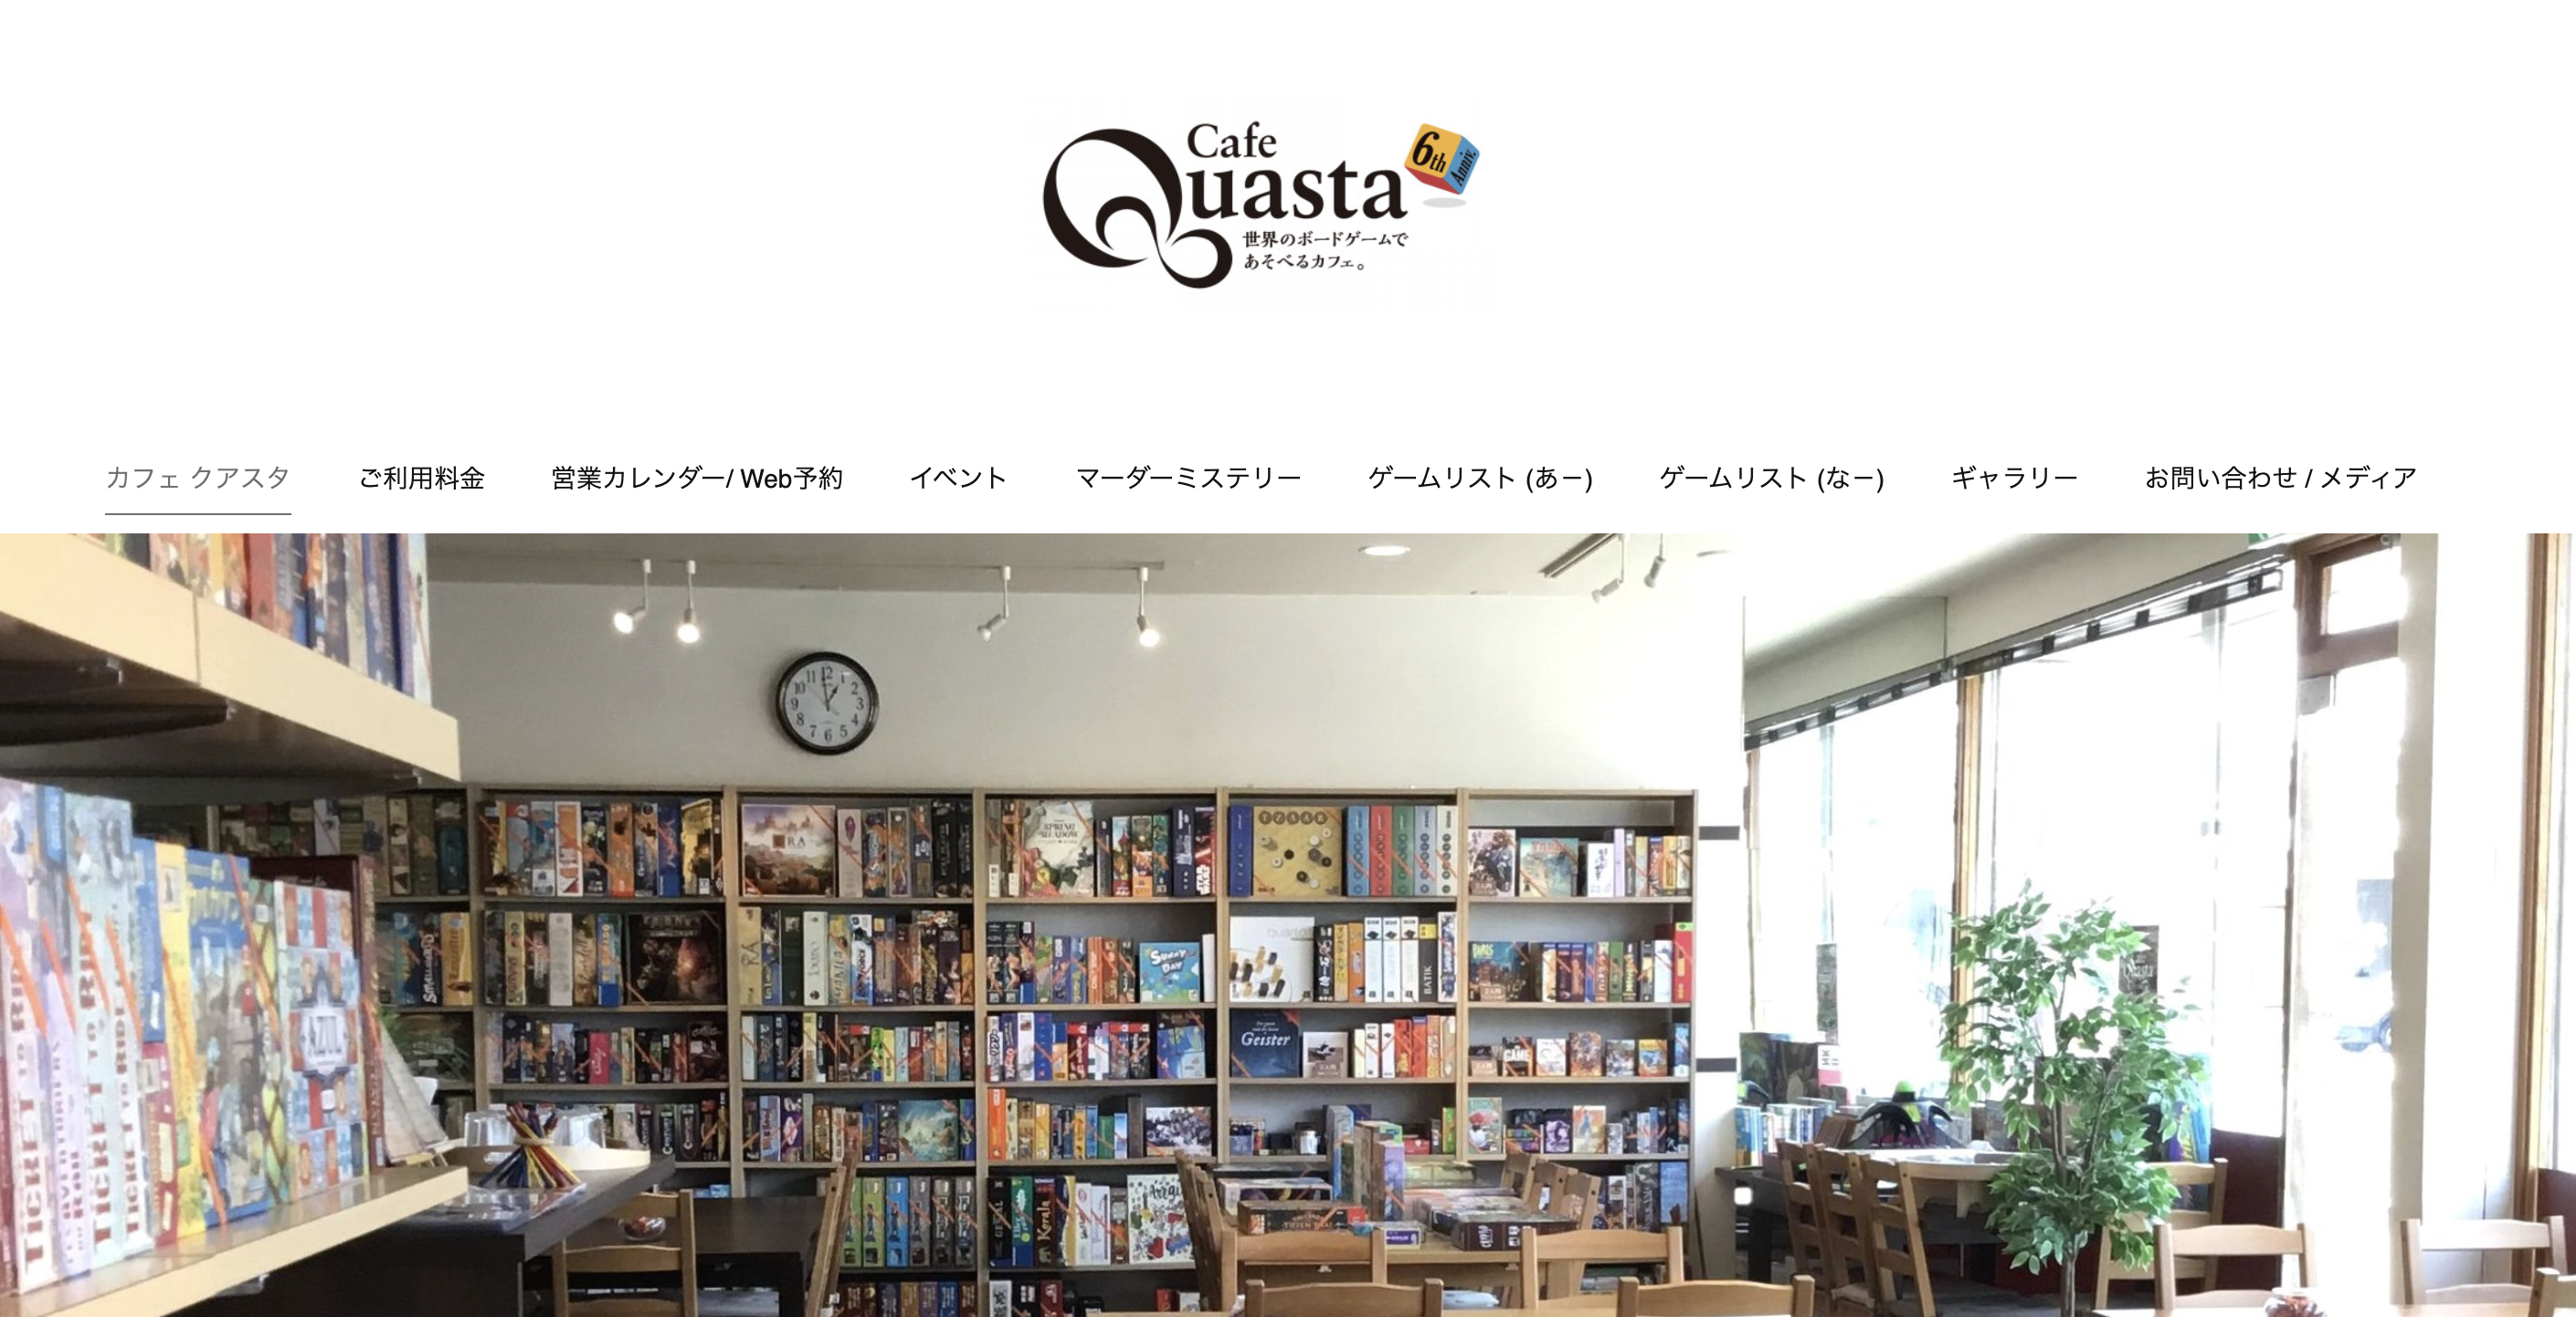 Cafe Quasta